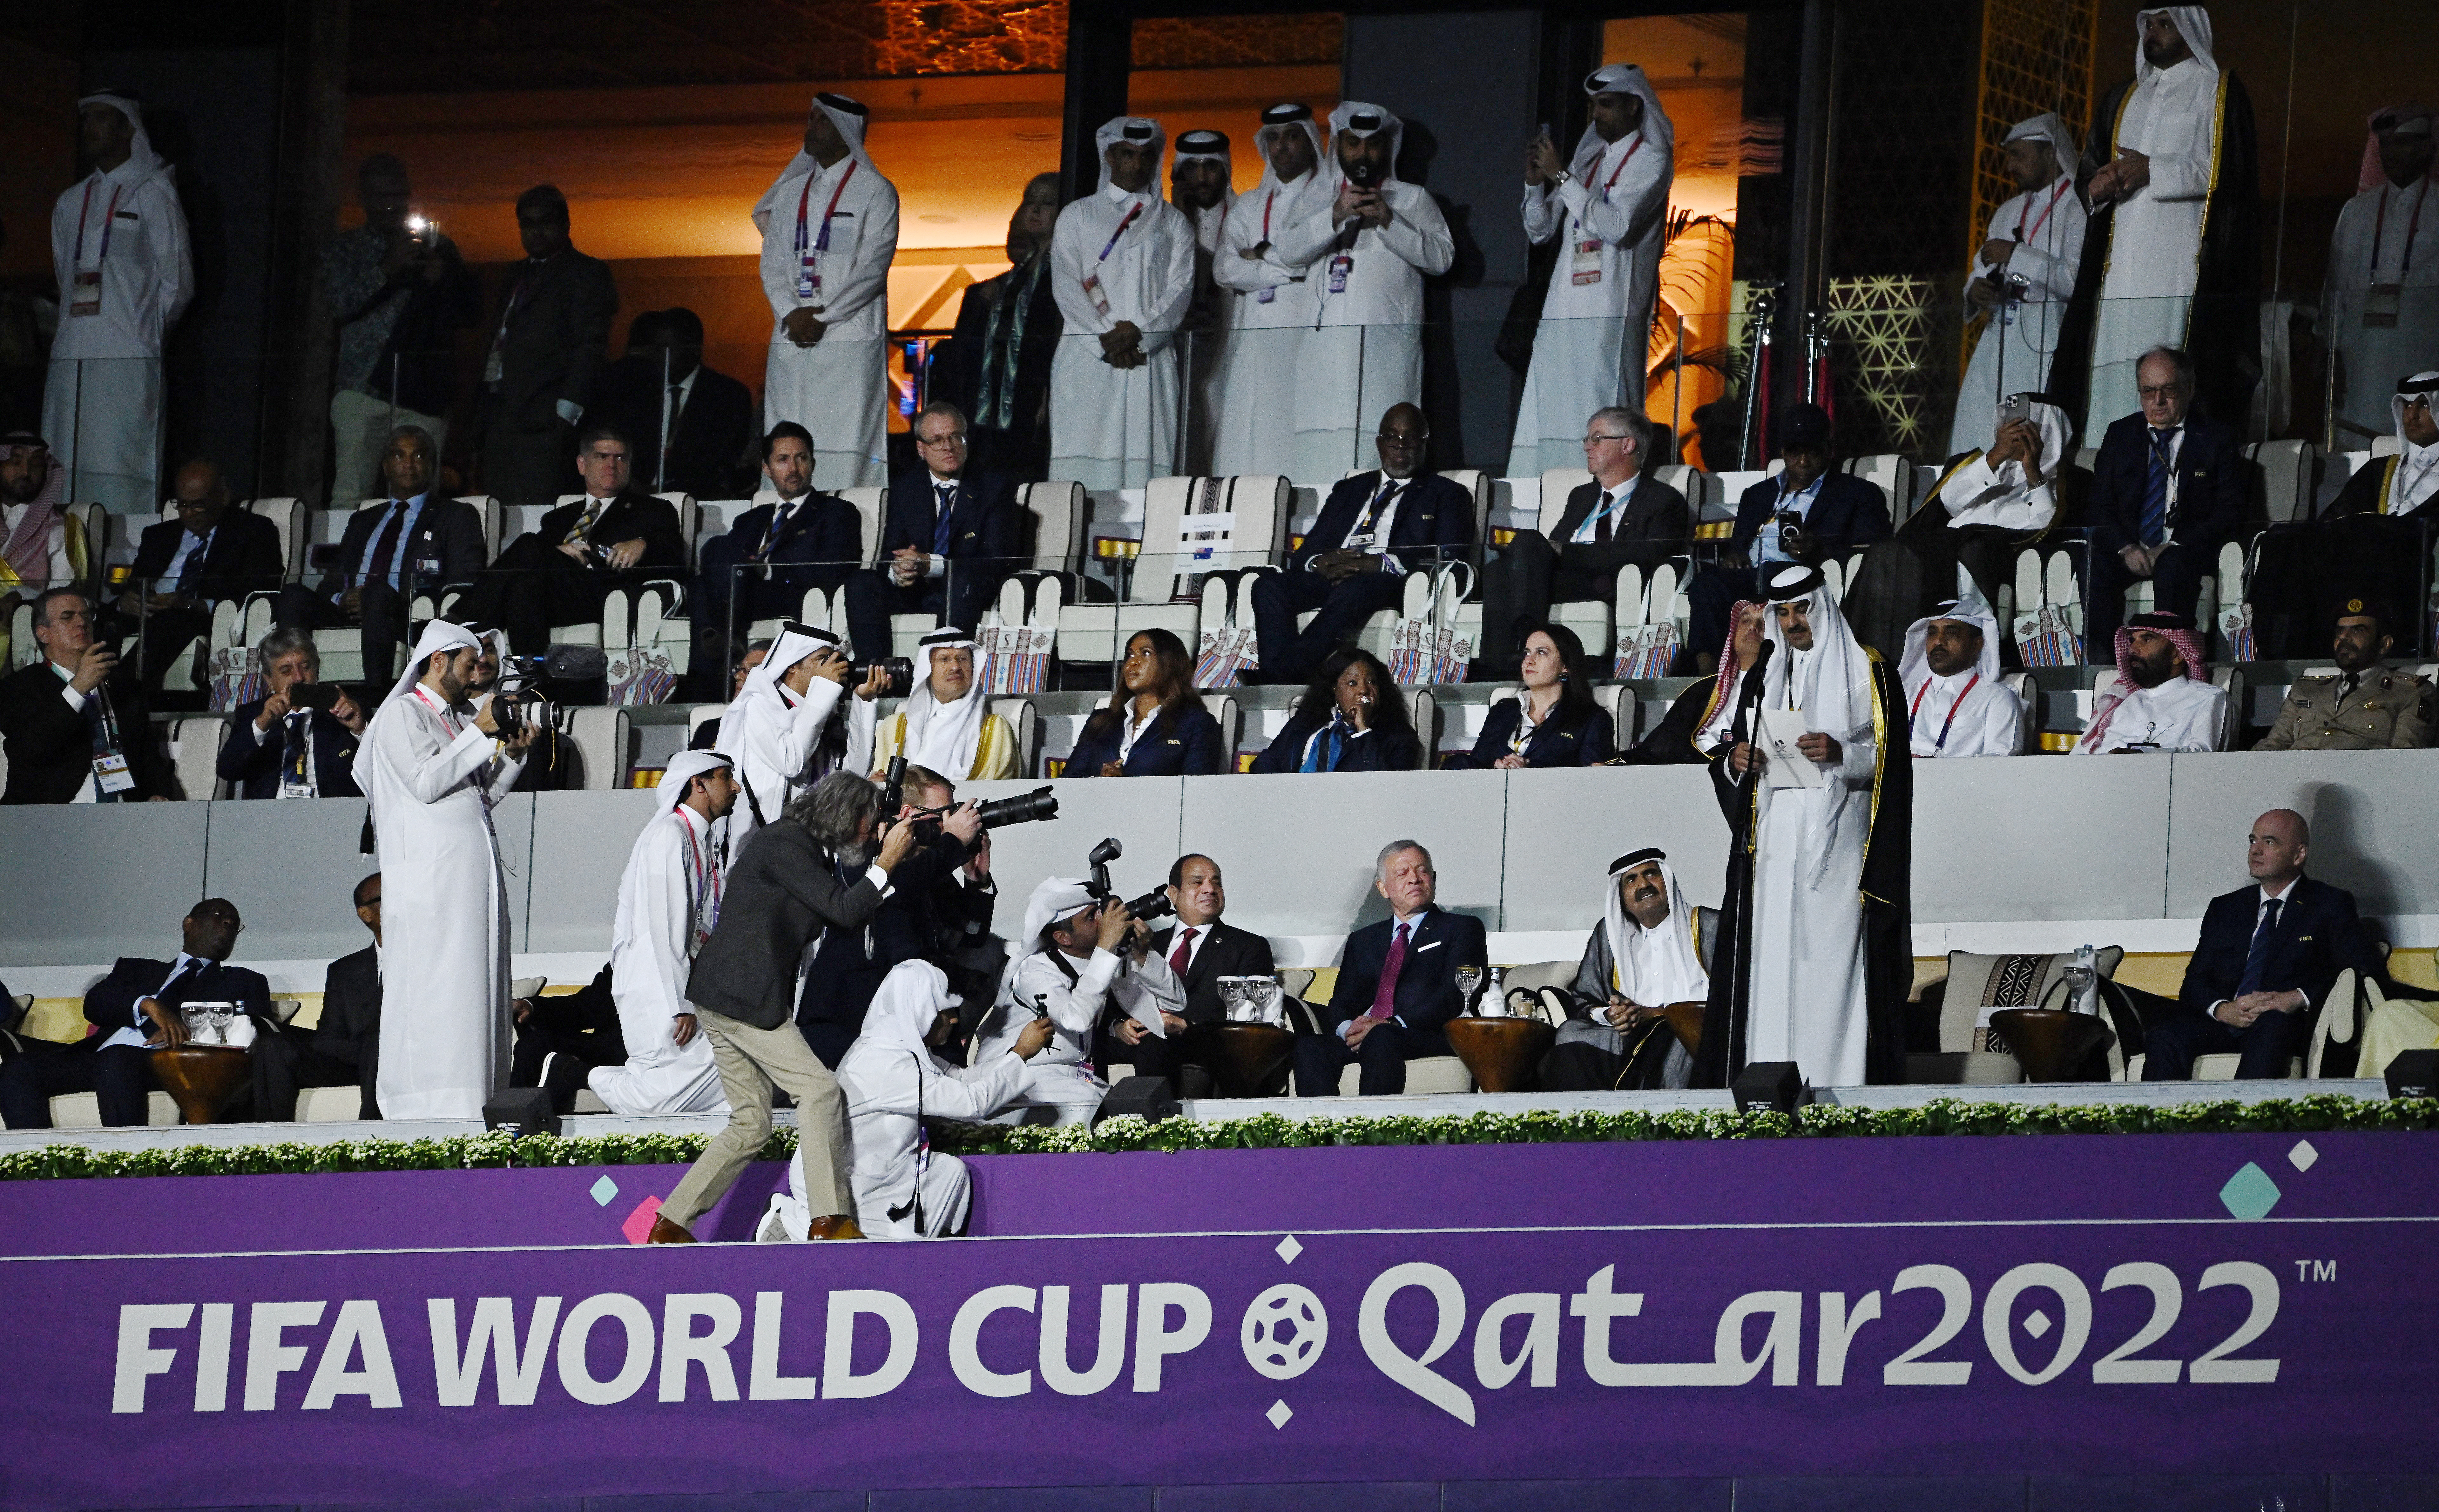 El Emir Sheikh Tamim bin Hamad Al Thani apareció jugando a la pelota y firmando una foto. Con un micrófono dio la bienvenida al mundial desde su palco (REUTERS/Dylan Martinez)